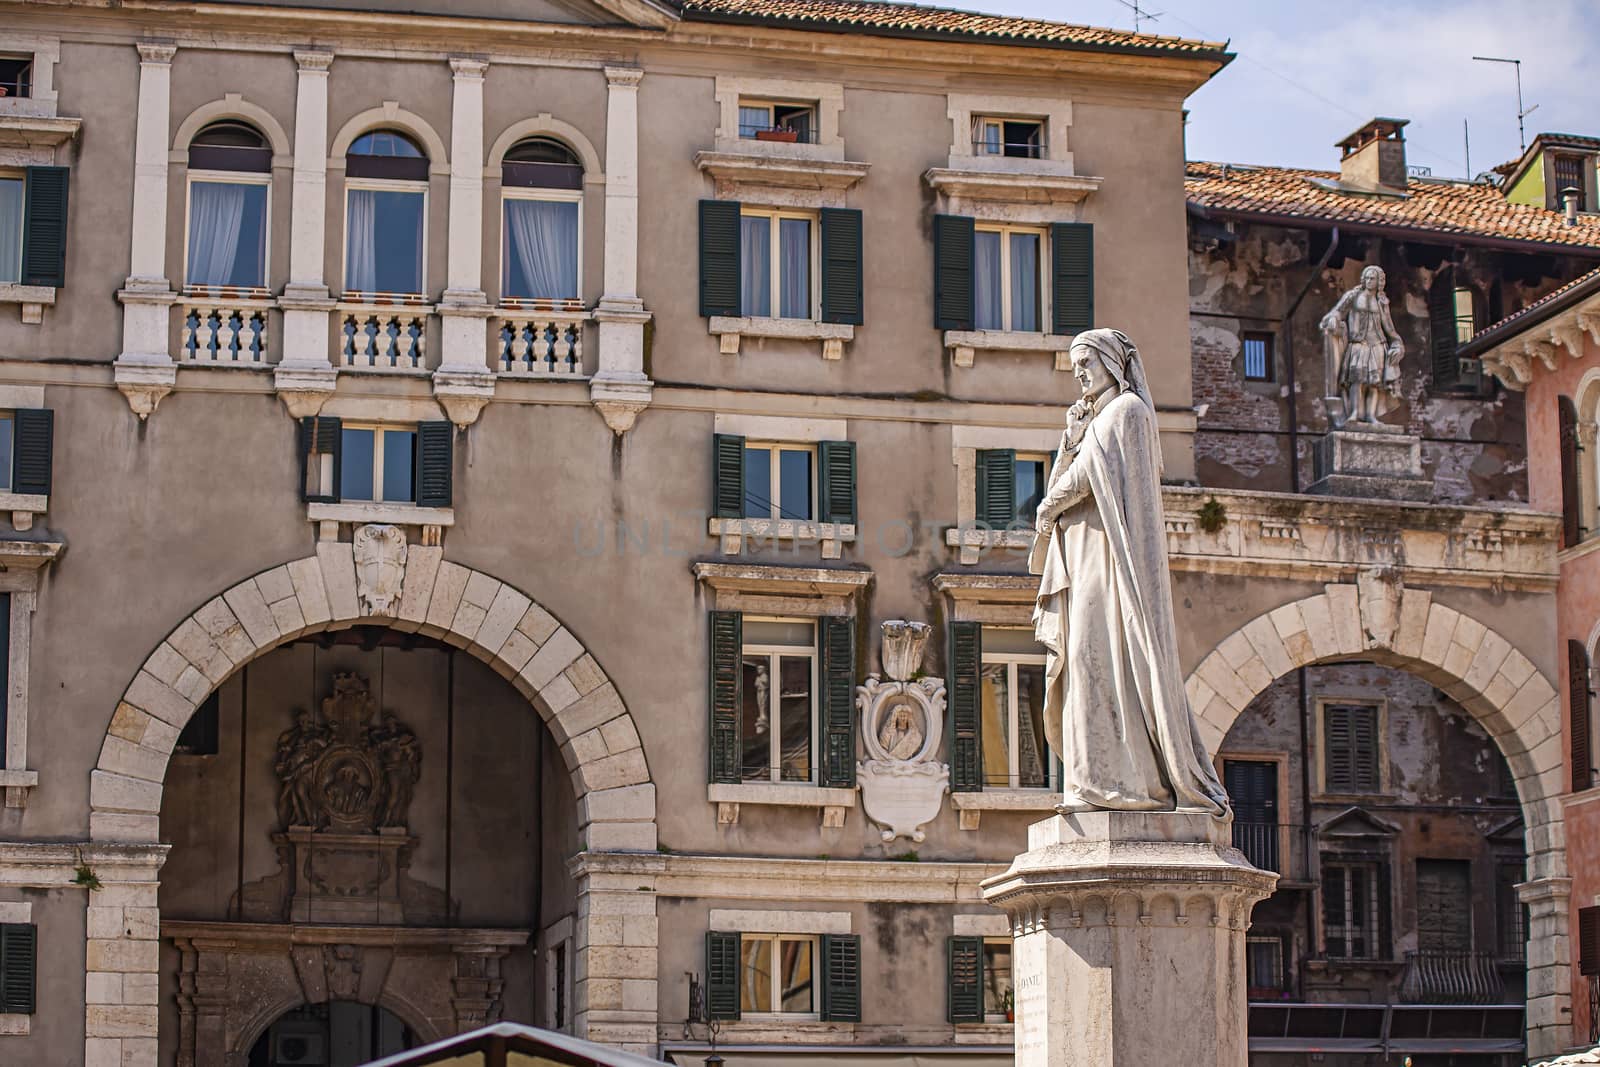 Verona's Dante statue 2 by pippocarlot